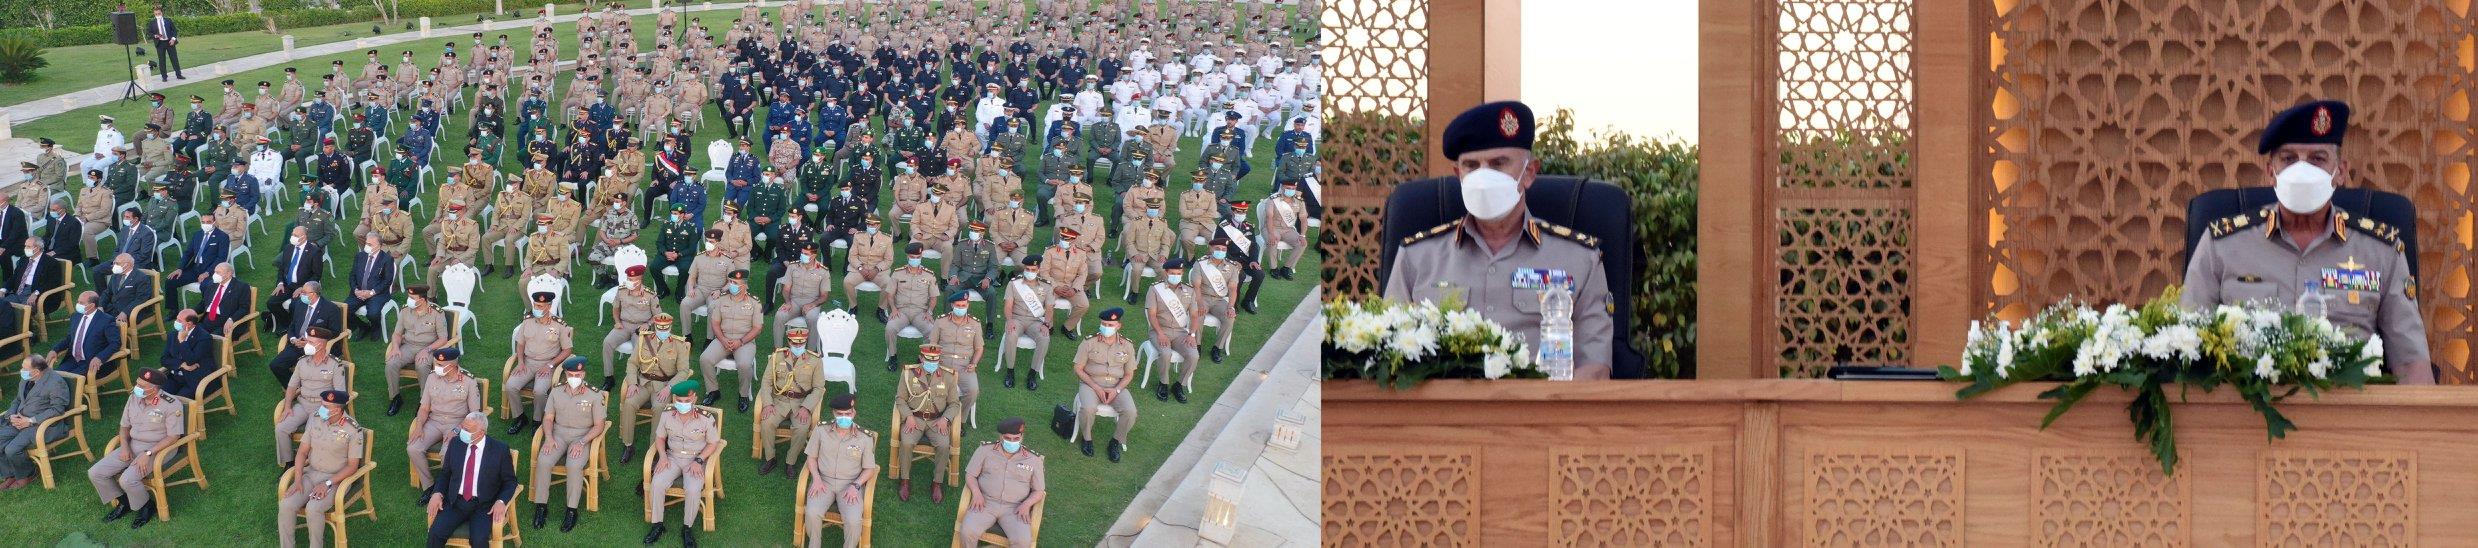 وزير الدفاع يشهد تخريج دورات جديدة من دارسى أكاديمية ناصر العسكرية وكلية القادة والأركان